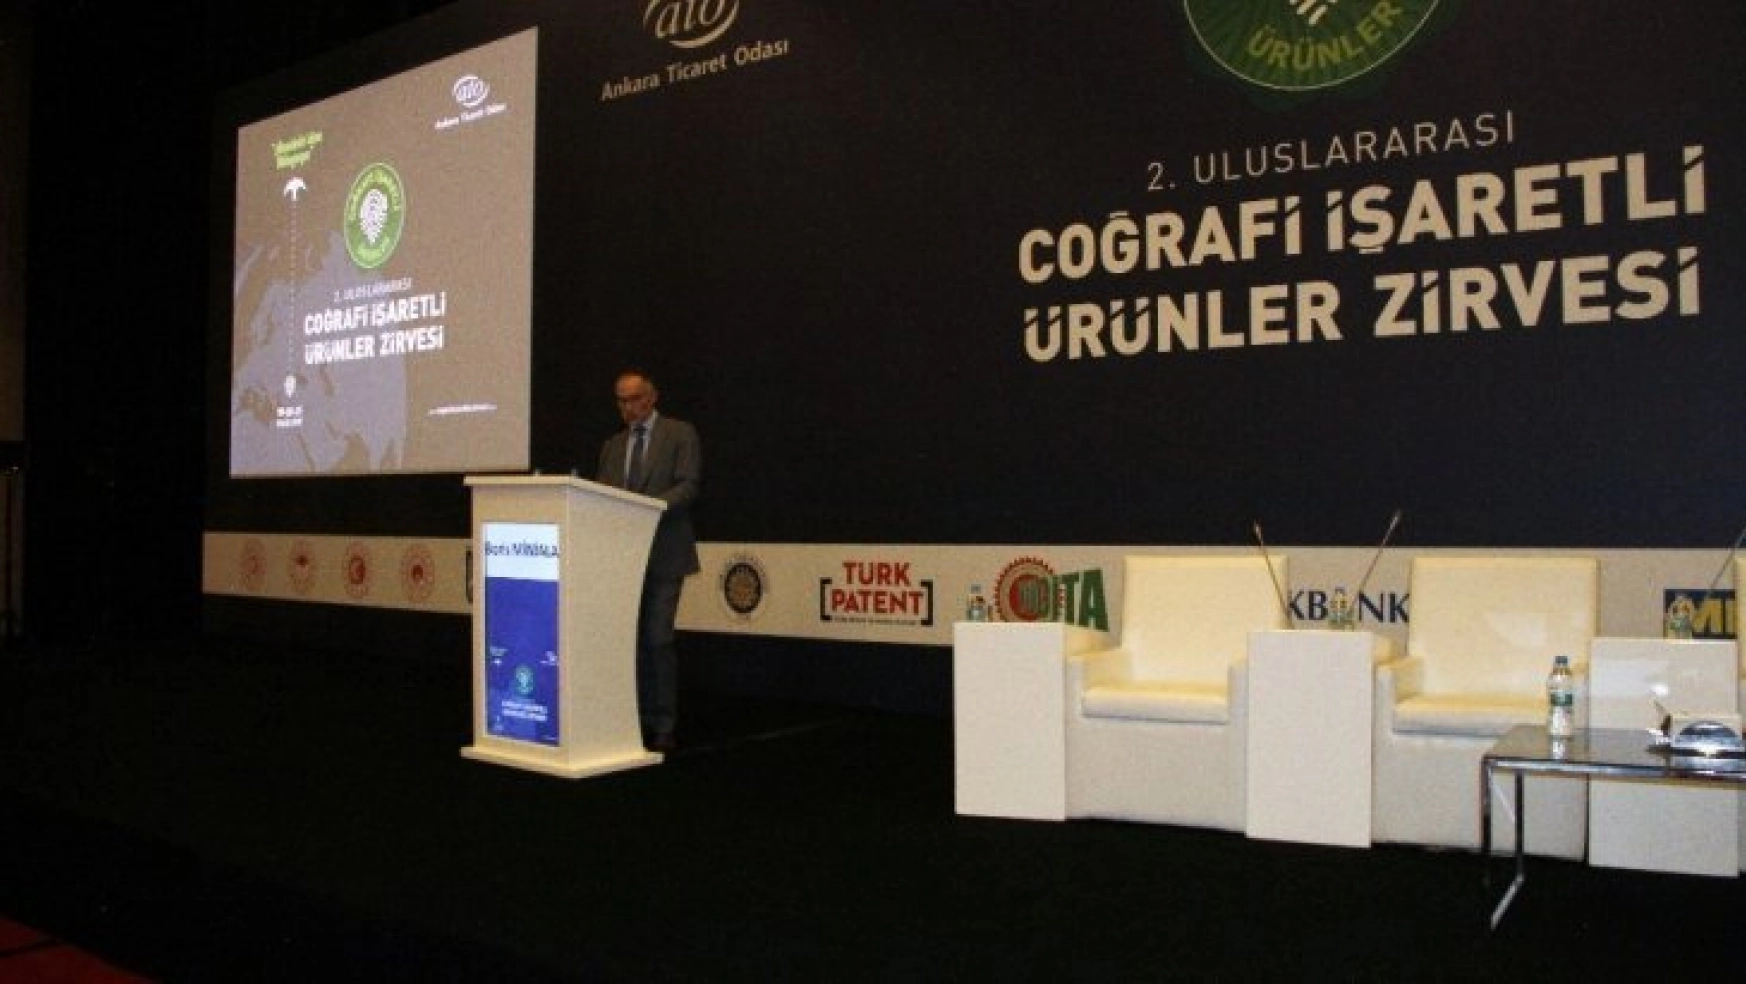 Uluslararası Coğrafi İşaretli Ürünler Zirvesi, Metro Türkiye'nin sponsorluğunda gerçekleşti